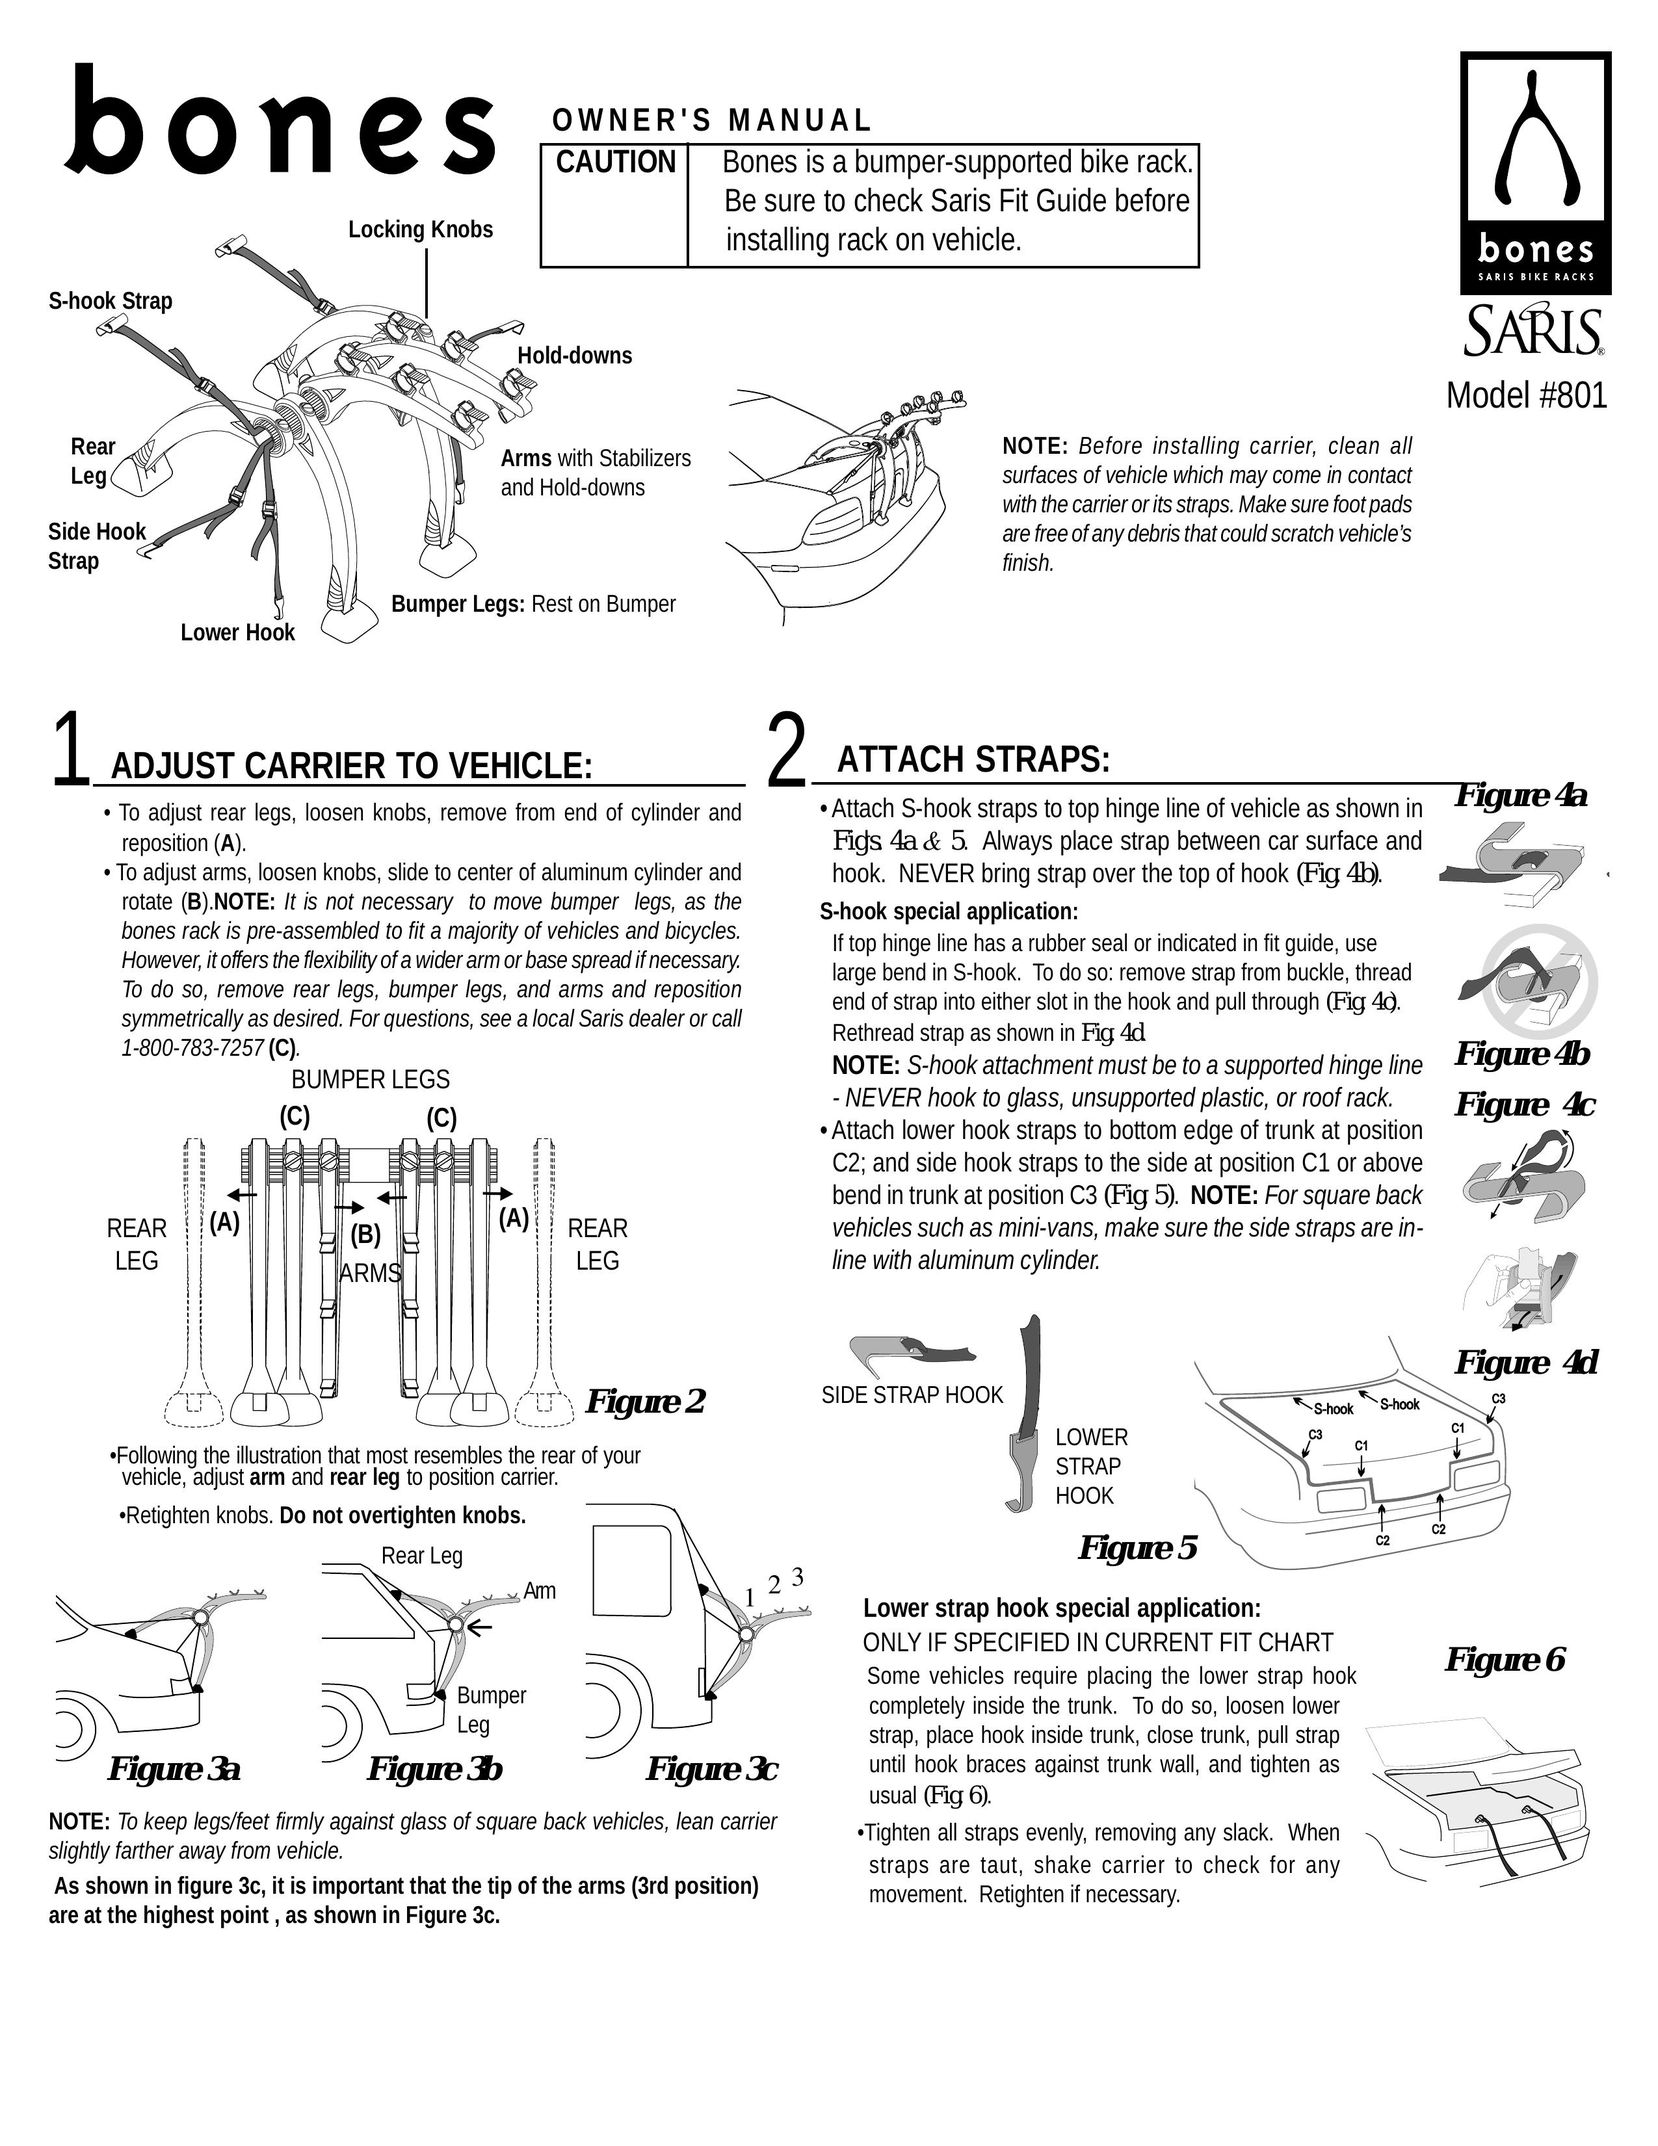 Saris 801 Bicycle Accessories User Manual